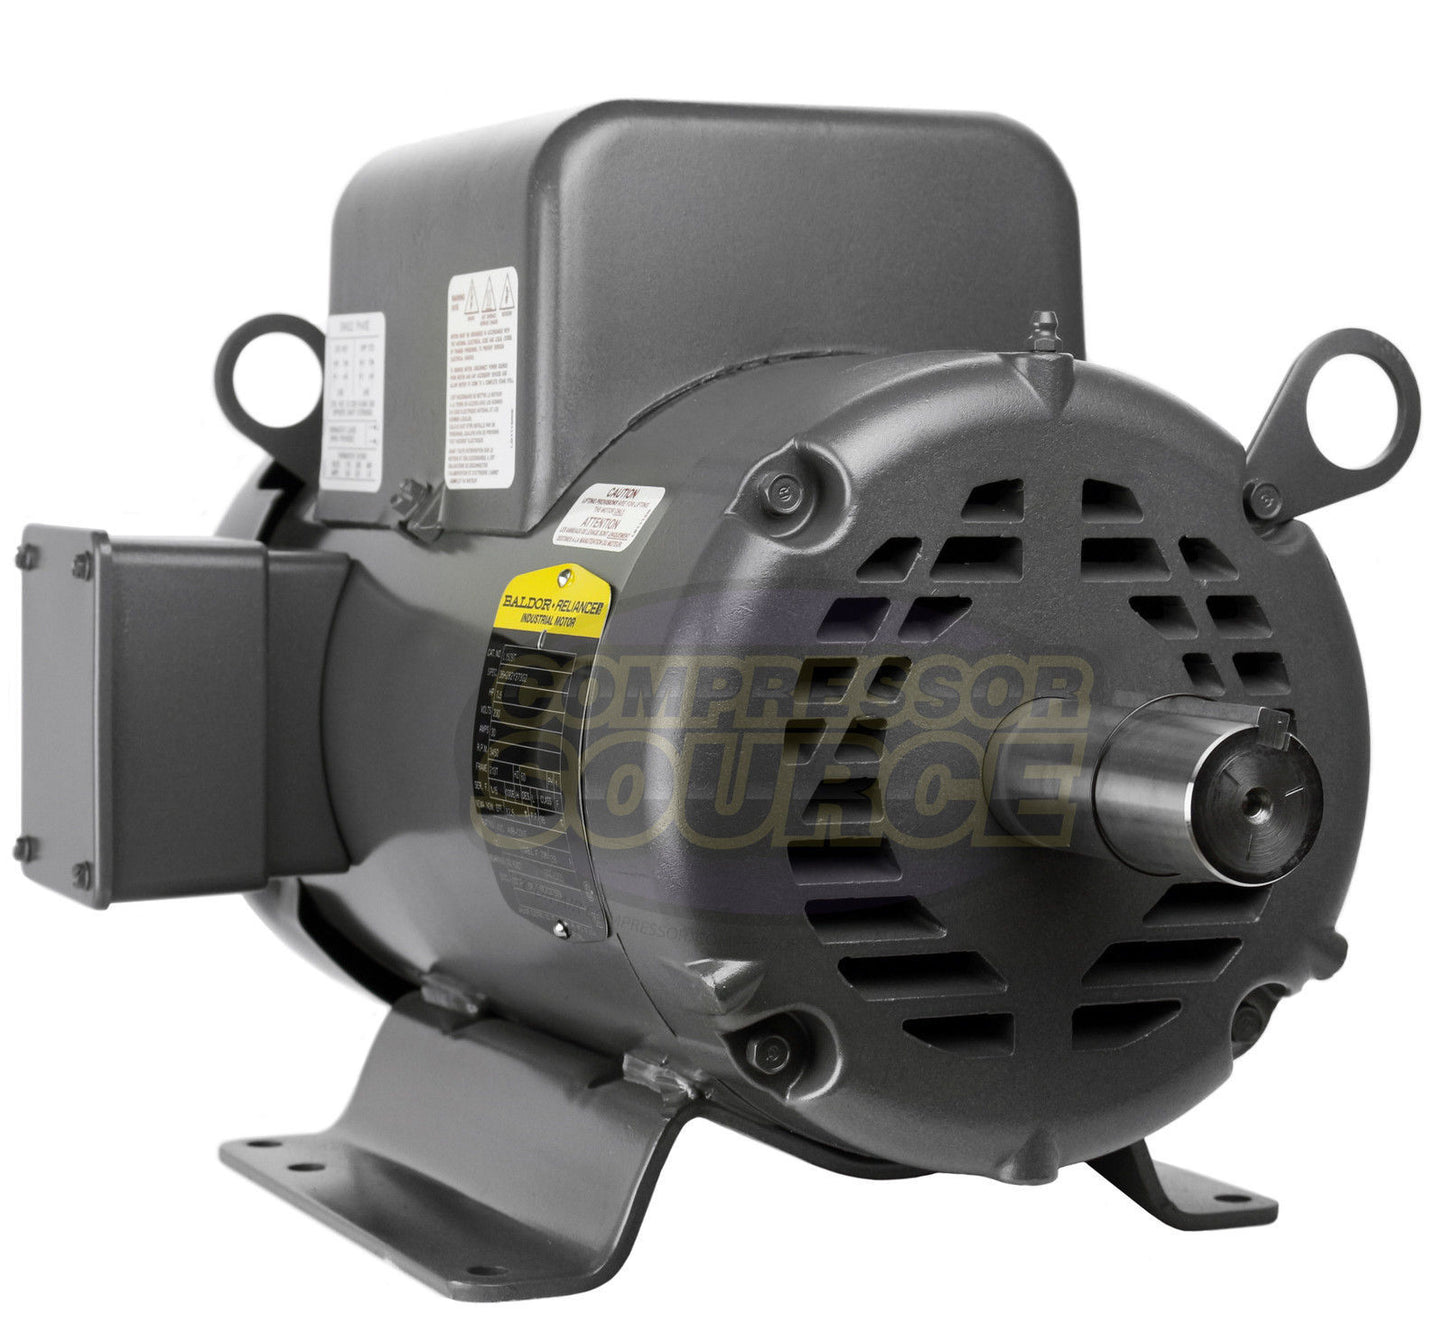 Baldor 7.5 HP Single Phase Electric Compressor Motor 213T Frame 230V 3450 RPM